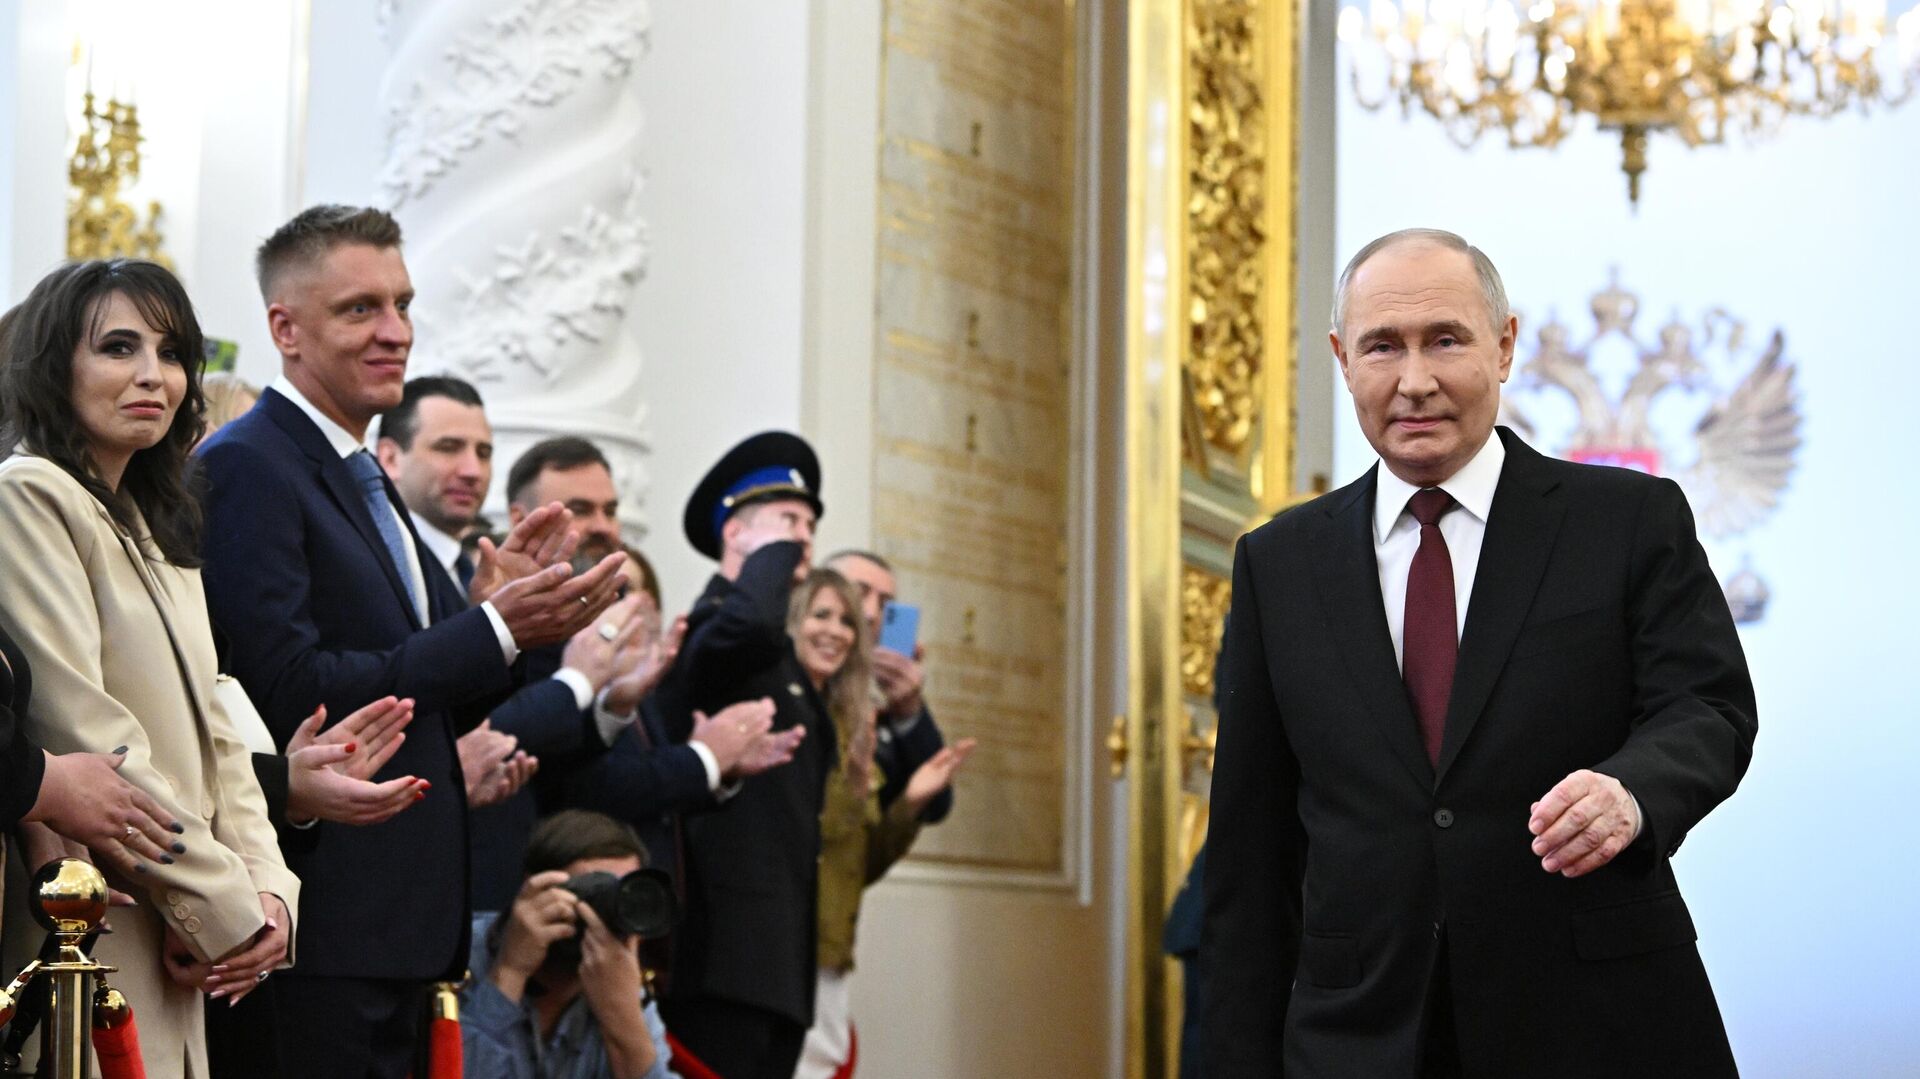 Избранный президент РФ Владимир Путин перед началом церемонии инаугурации в Кремле0